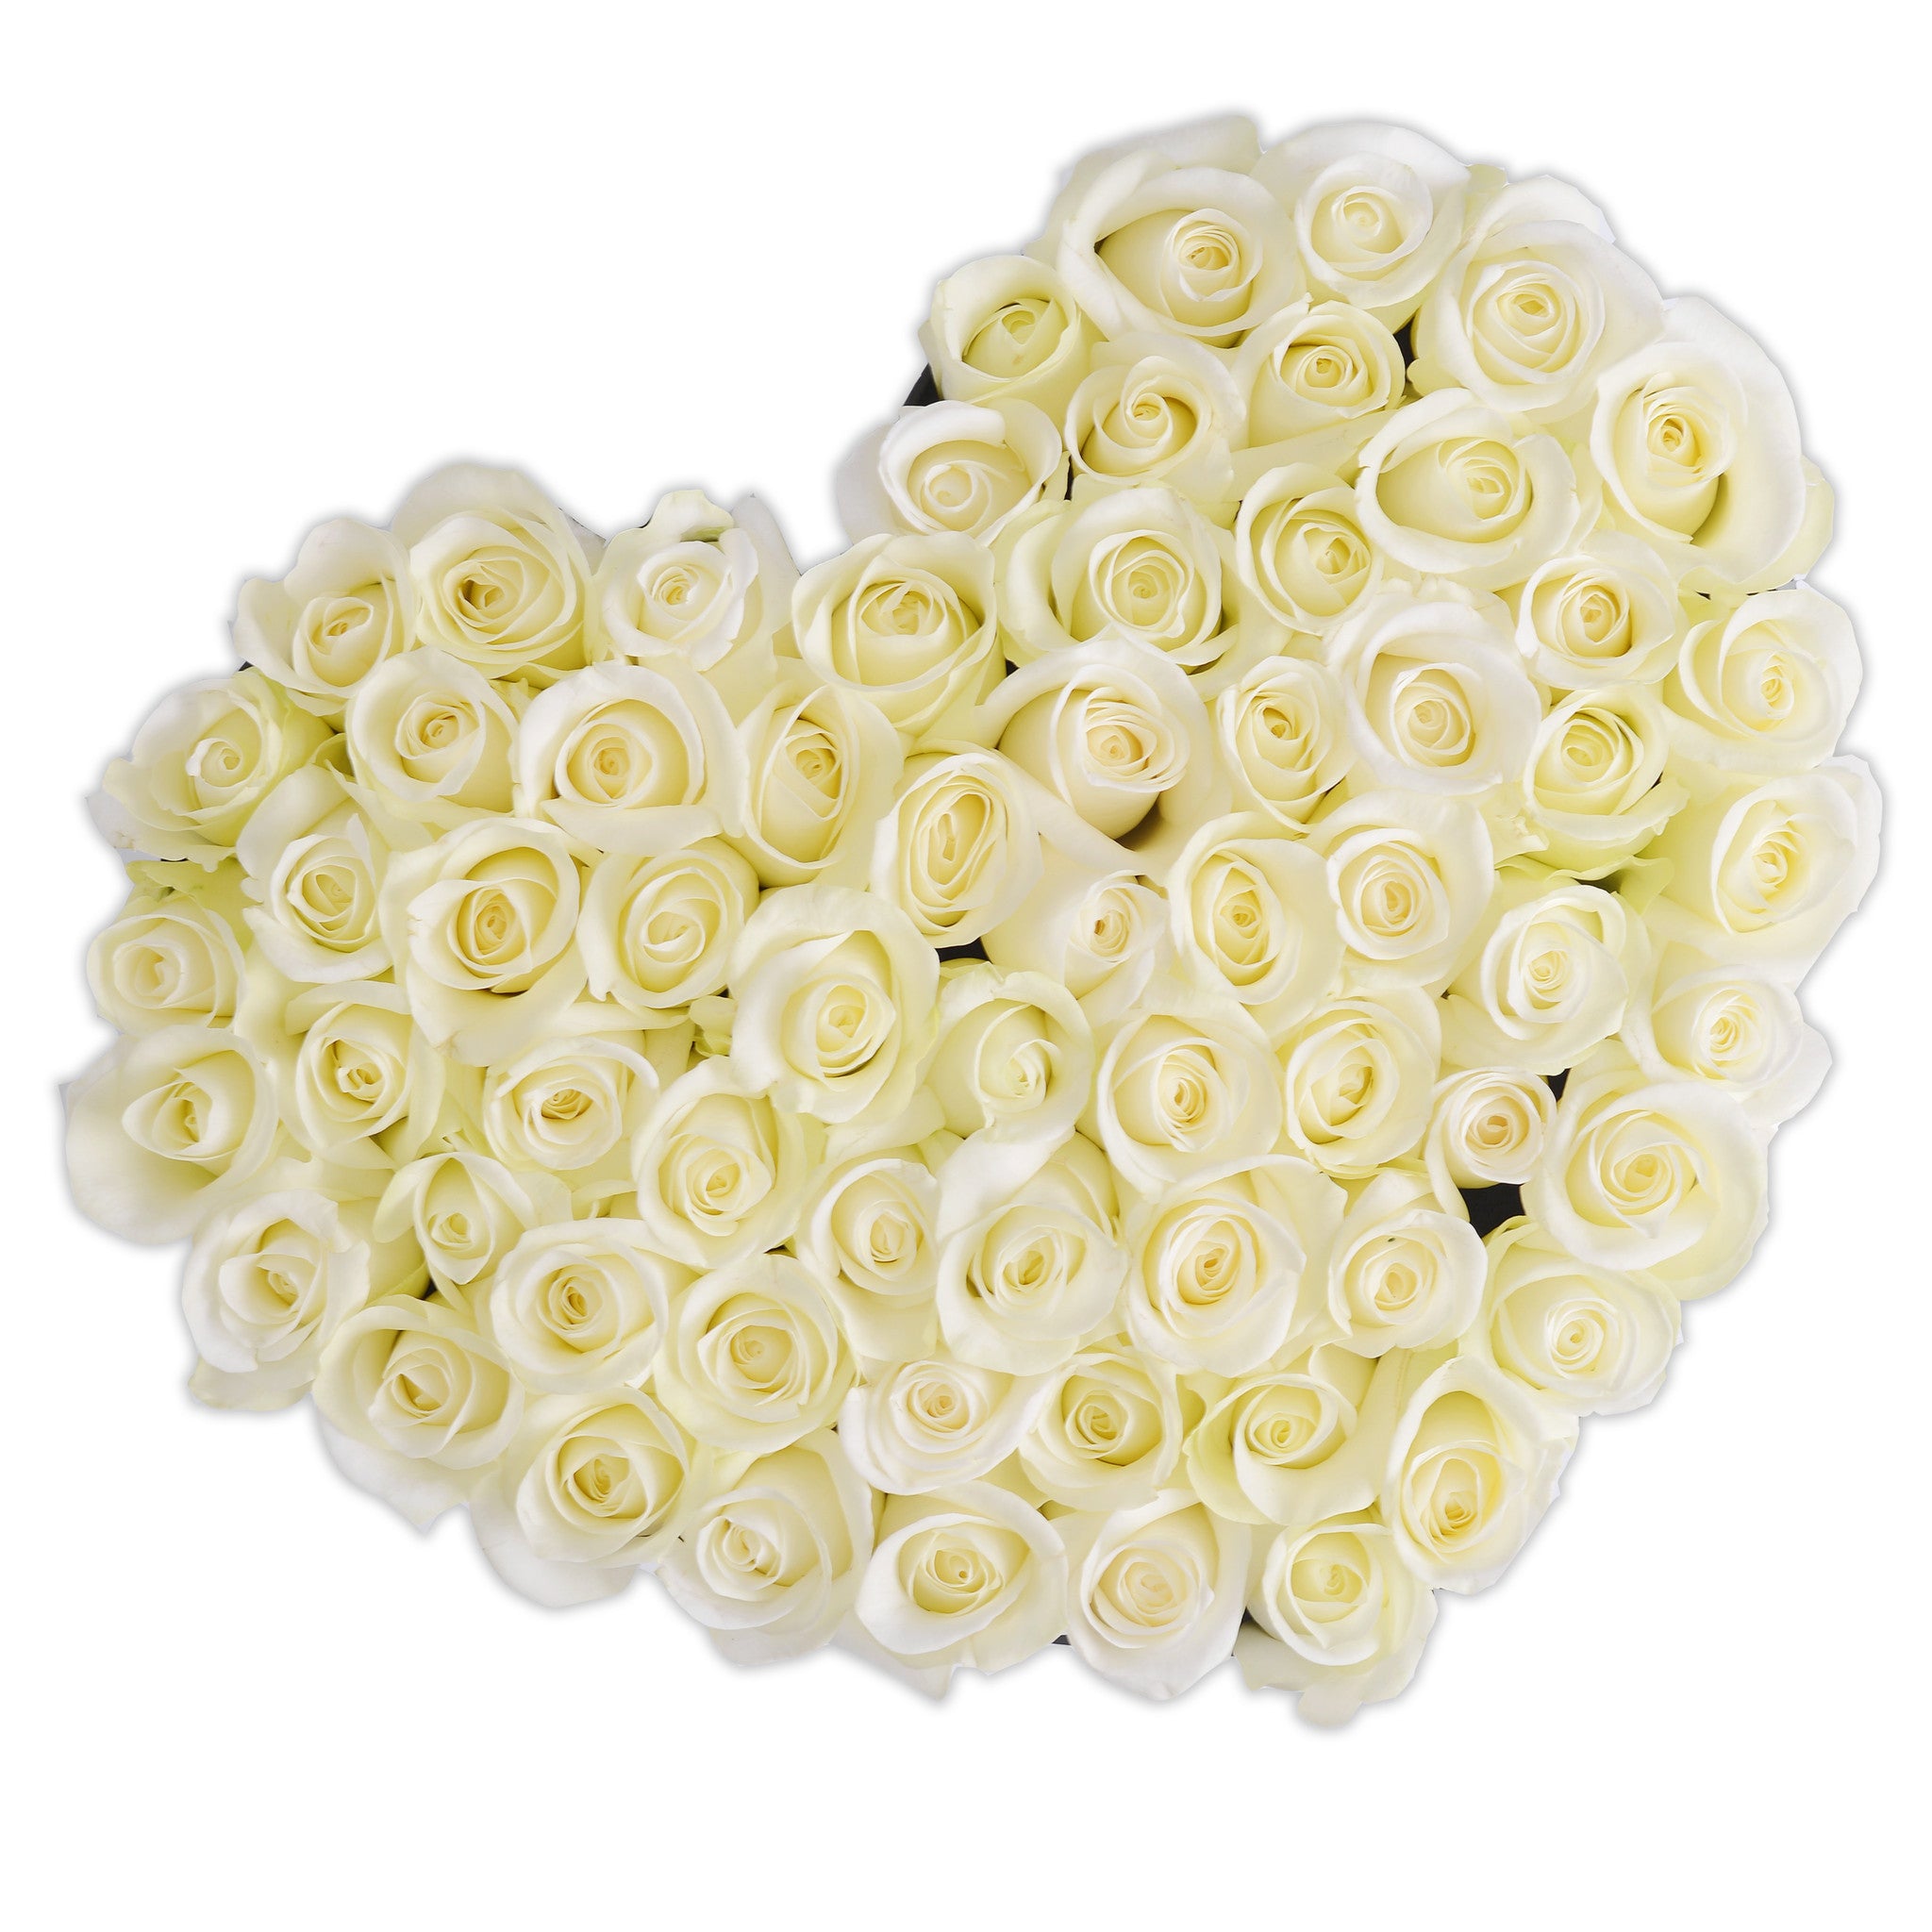 Heart - White Roses - Black Box - The Million Roses Budapest